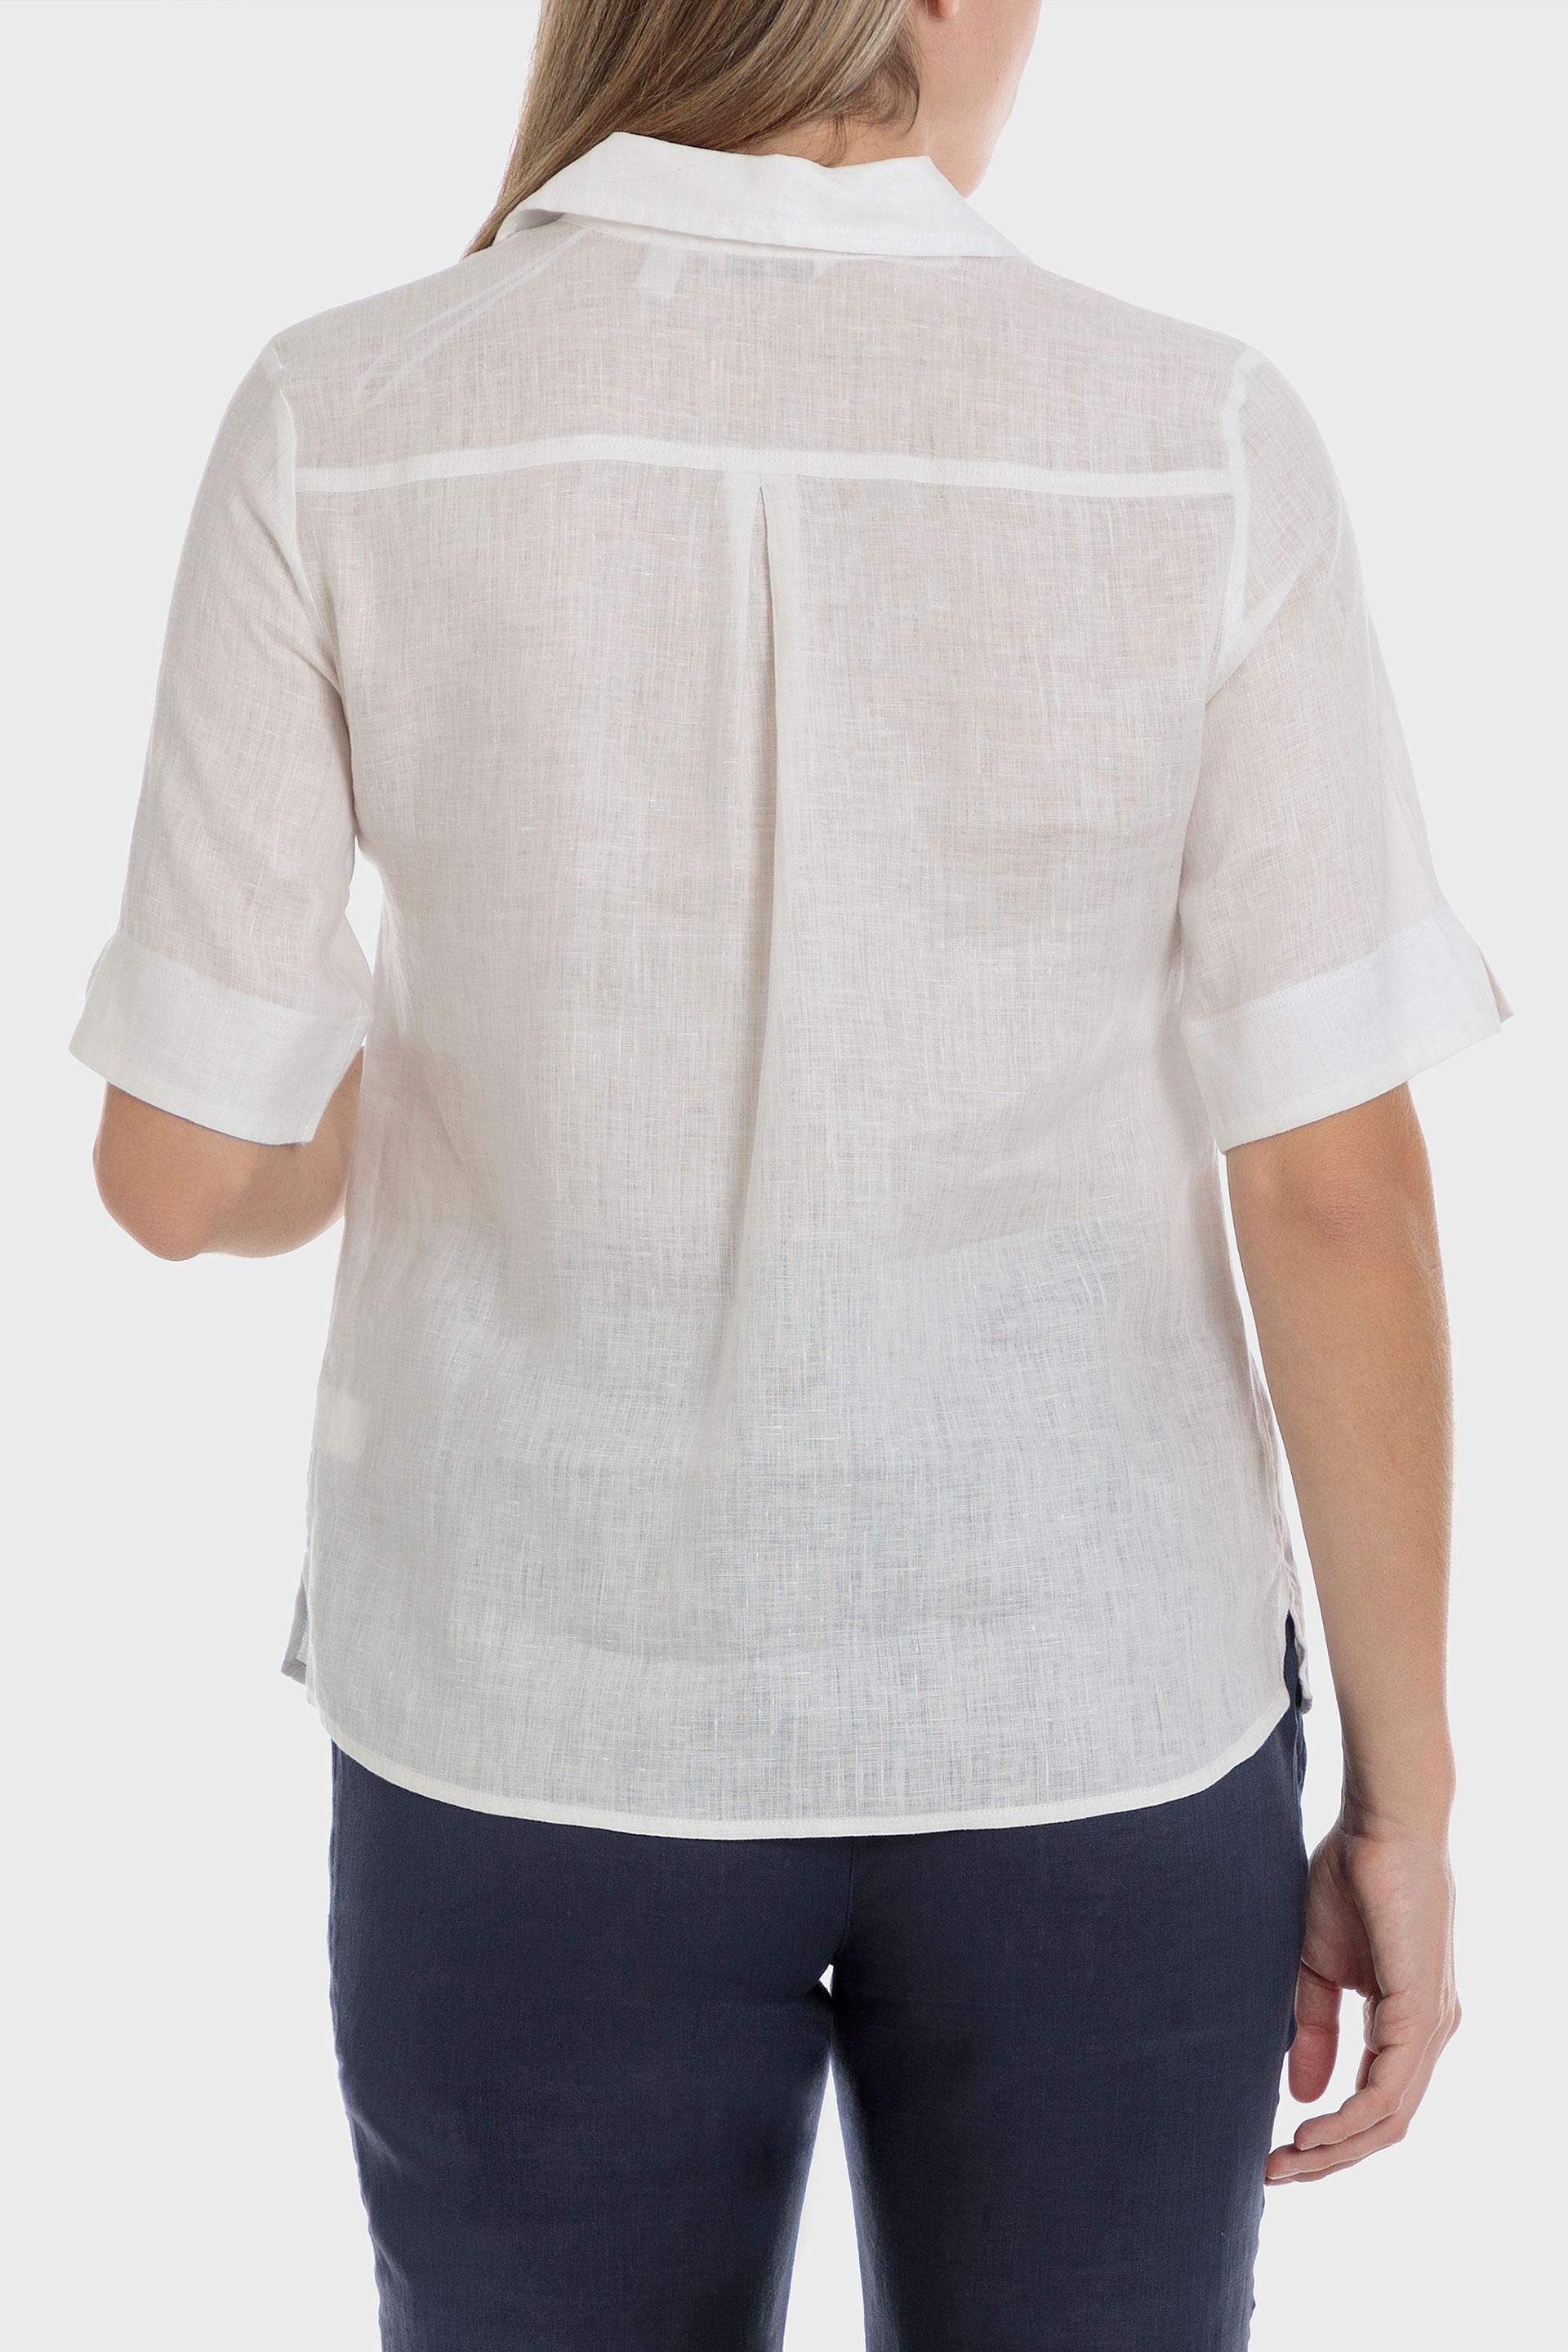 Punt Roma - White Linen Shirt